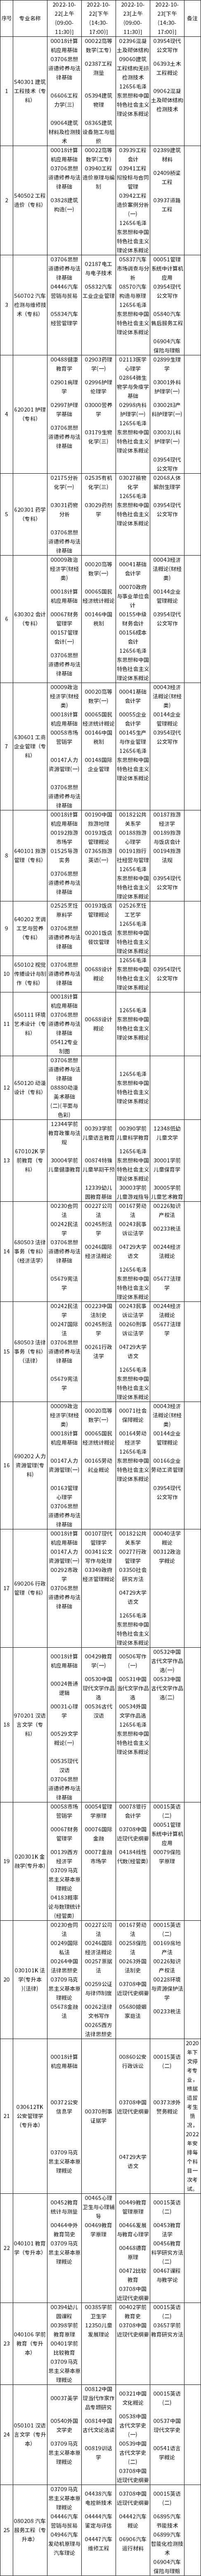 2022年10月贵州自考日程表